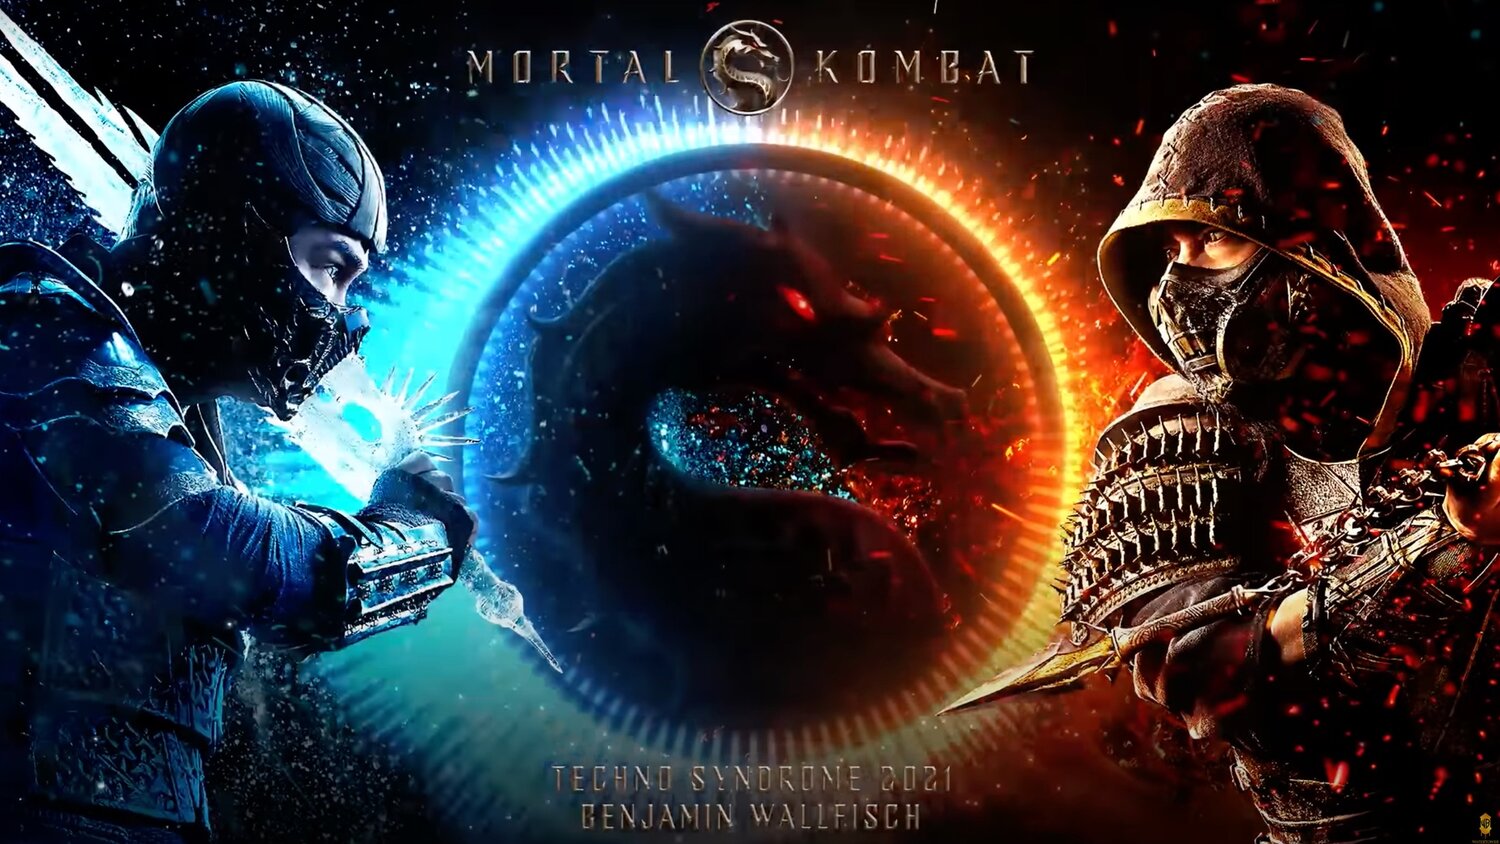 Mortal Kombat | Techno Syndrome 2021 a nova música tema do filme divulgada pela Warner Bros